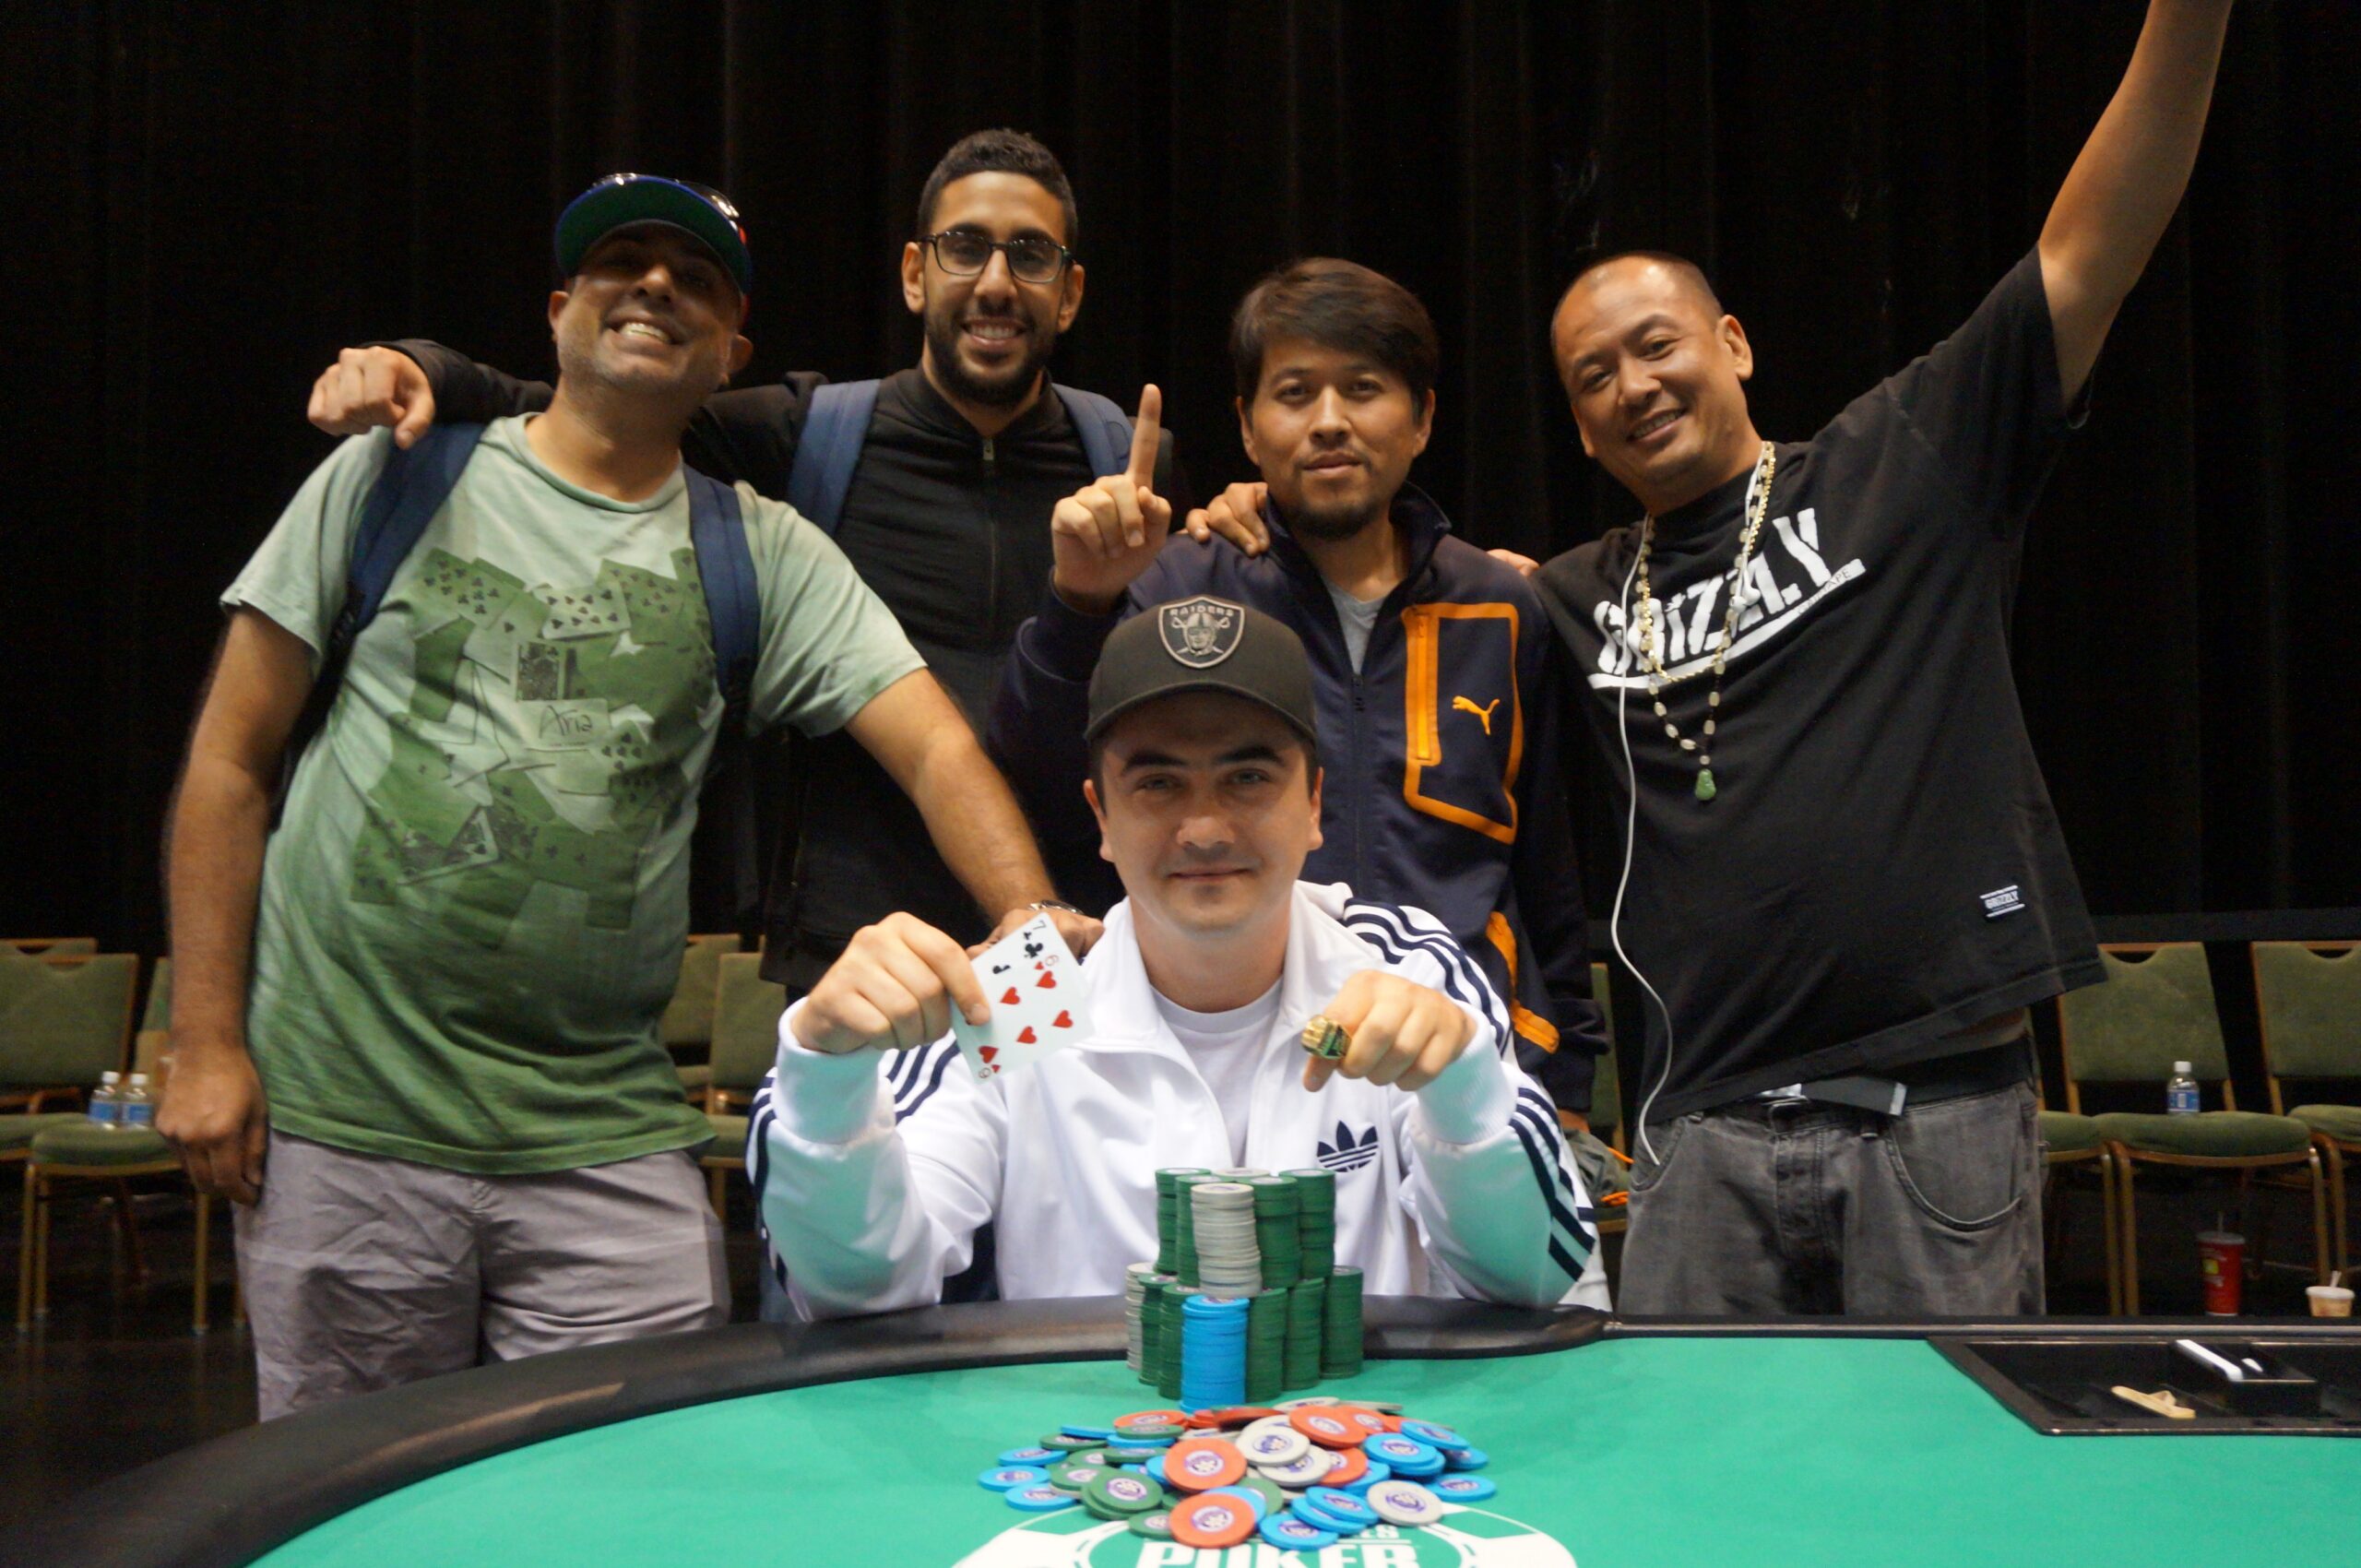 At North Carolina Harrah’s Cherokee, Four Los Angeles Poker Buddies Cash Big and Win Bling